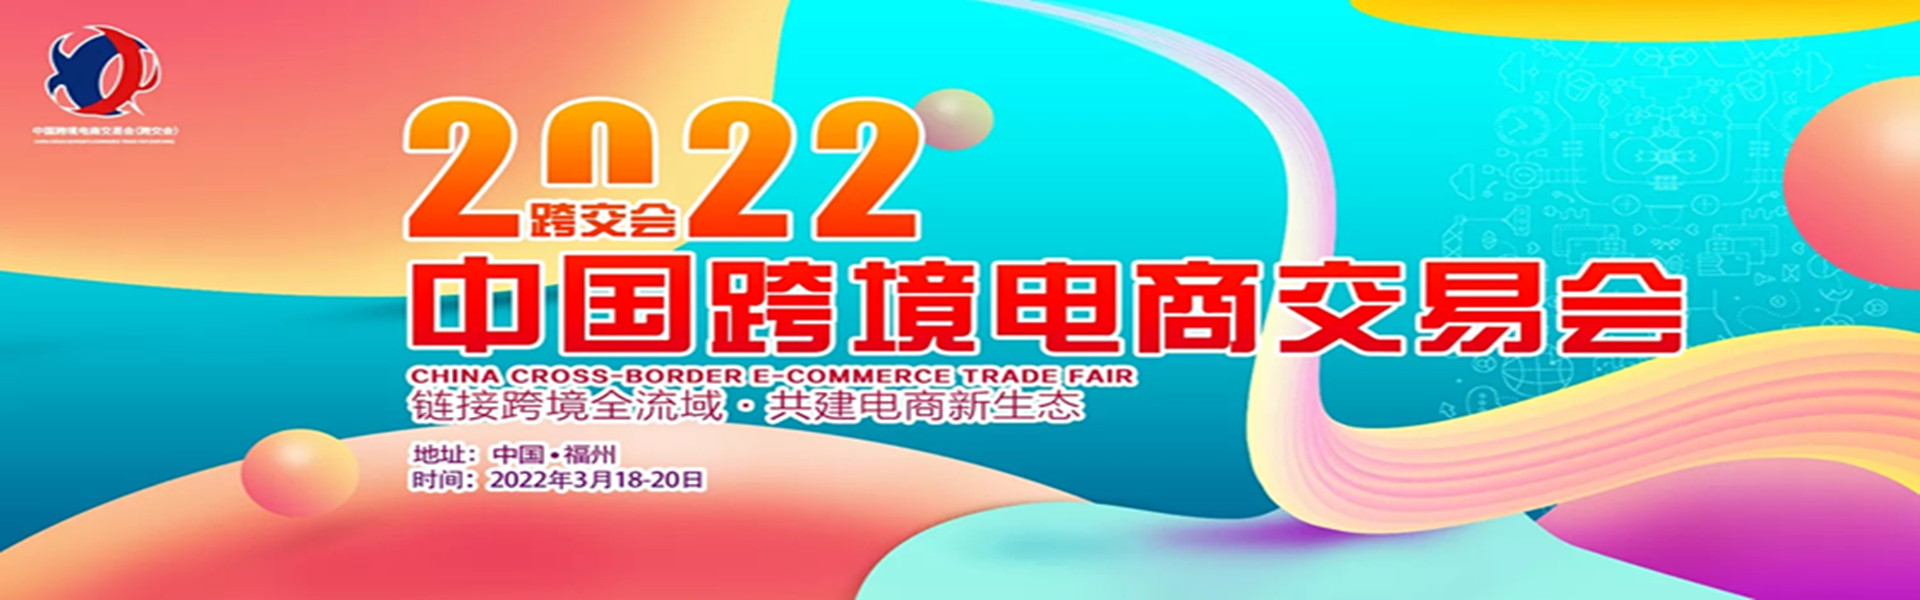 中国跨境电商交易会 （2022年春季）